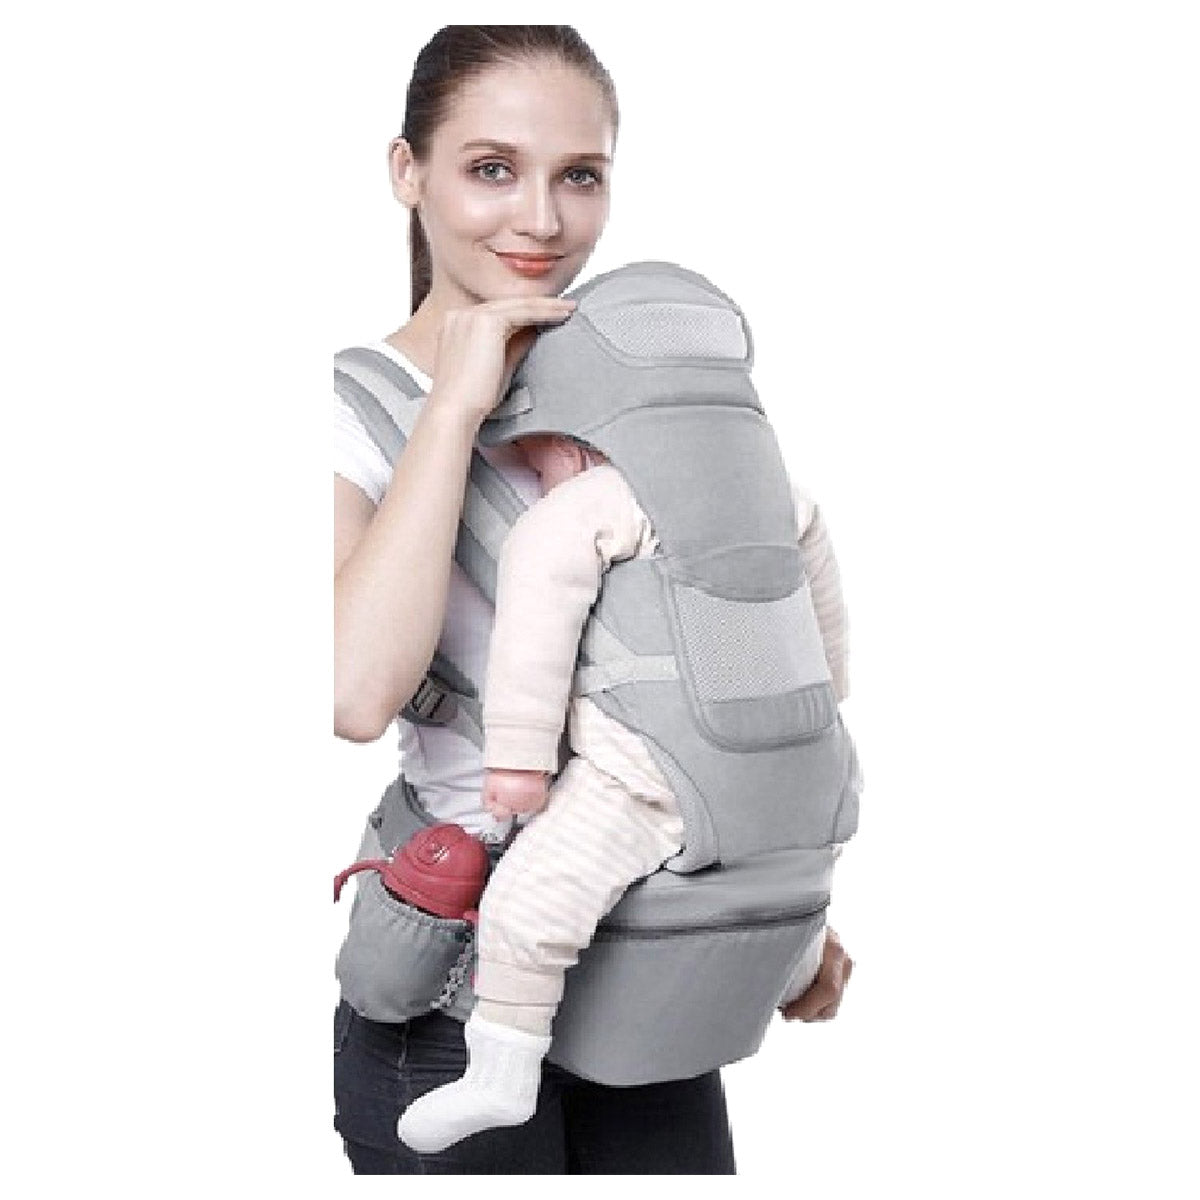 <tc>Ariko</tc> Ergonomic baby carrier 15 in 1 - Baby carrier Up to 25 kg - Baby carrier - Baby carrier - Multifunctional - Gray